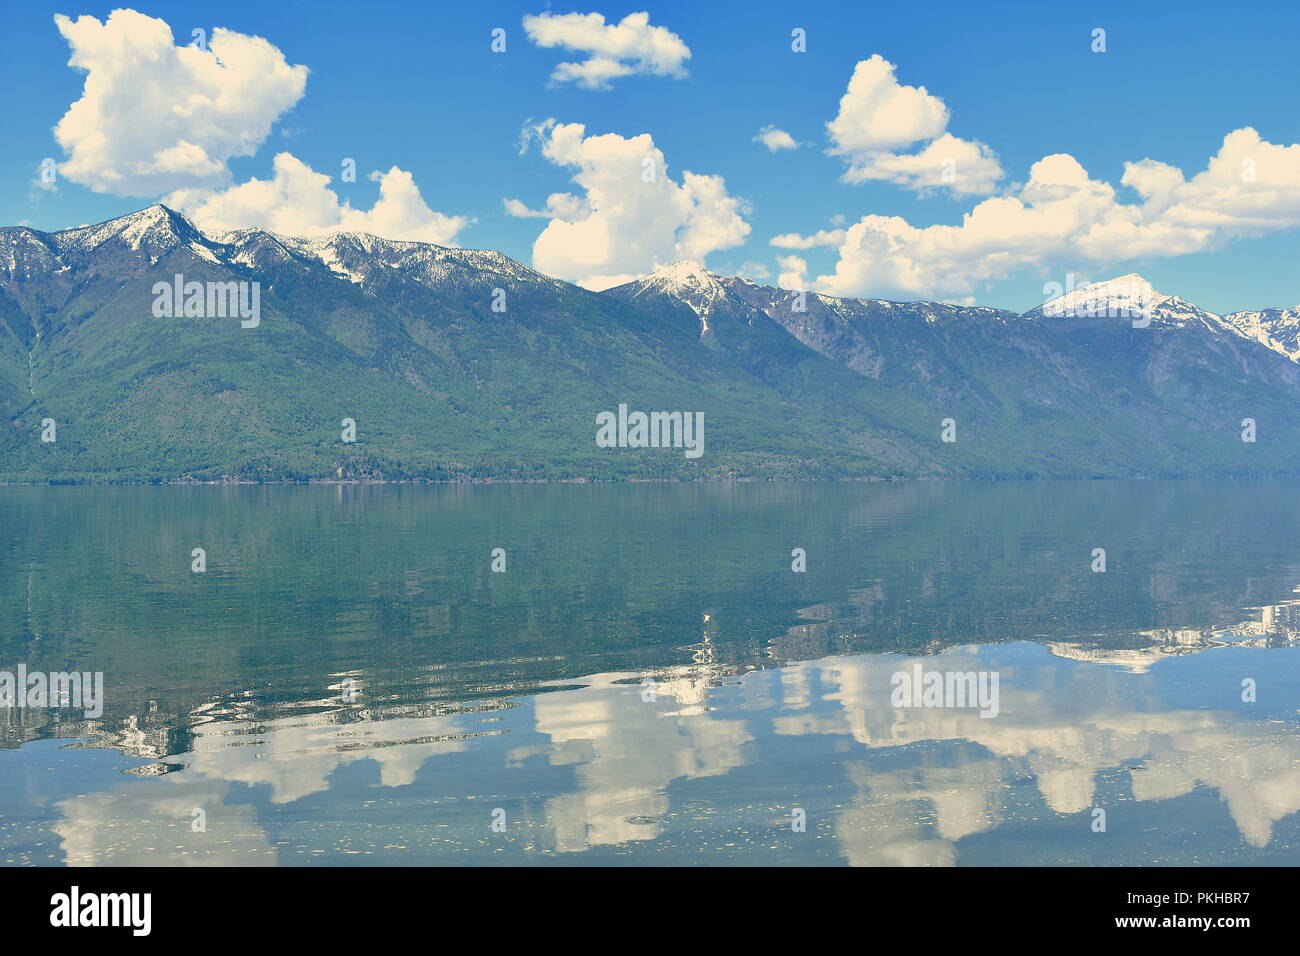 Ein See, in dem die Reflexion des riesigen schneebedeckten Berge entlang Seite. Mit einem schönen Himmel über Sie alle. Stockfoto